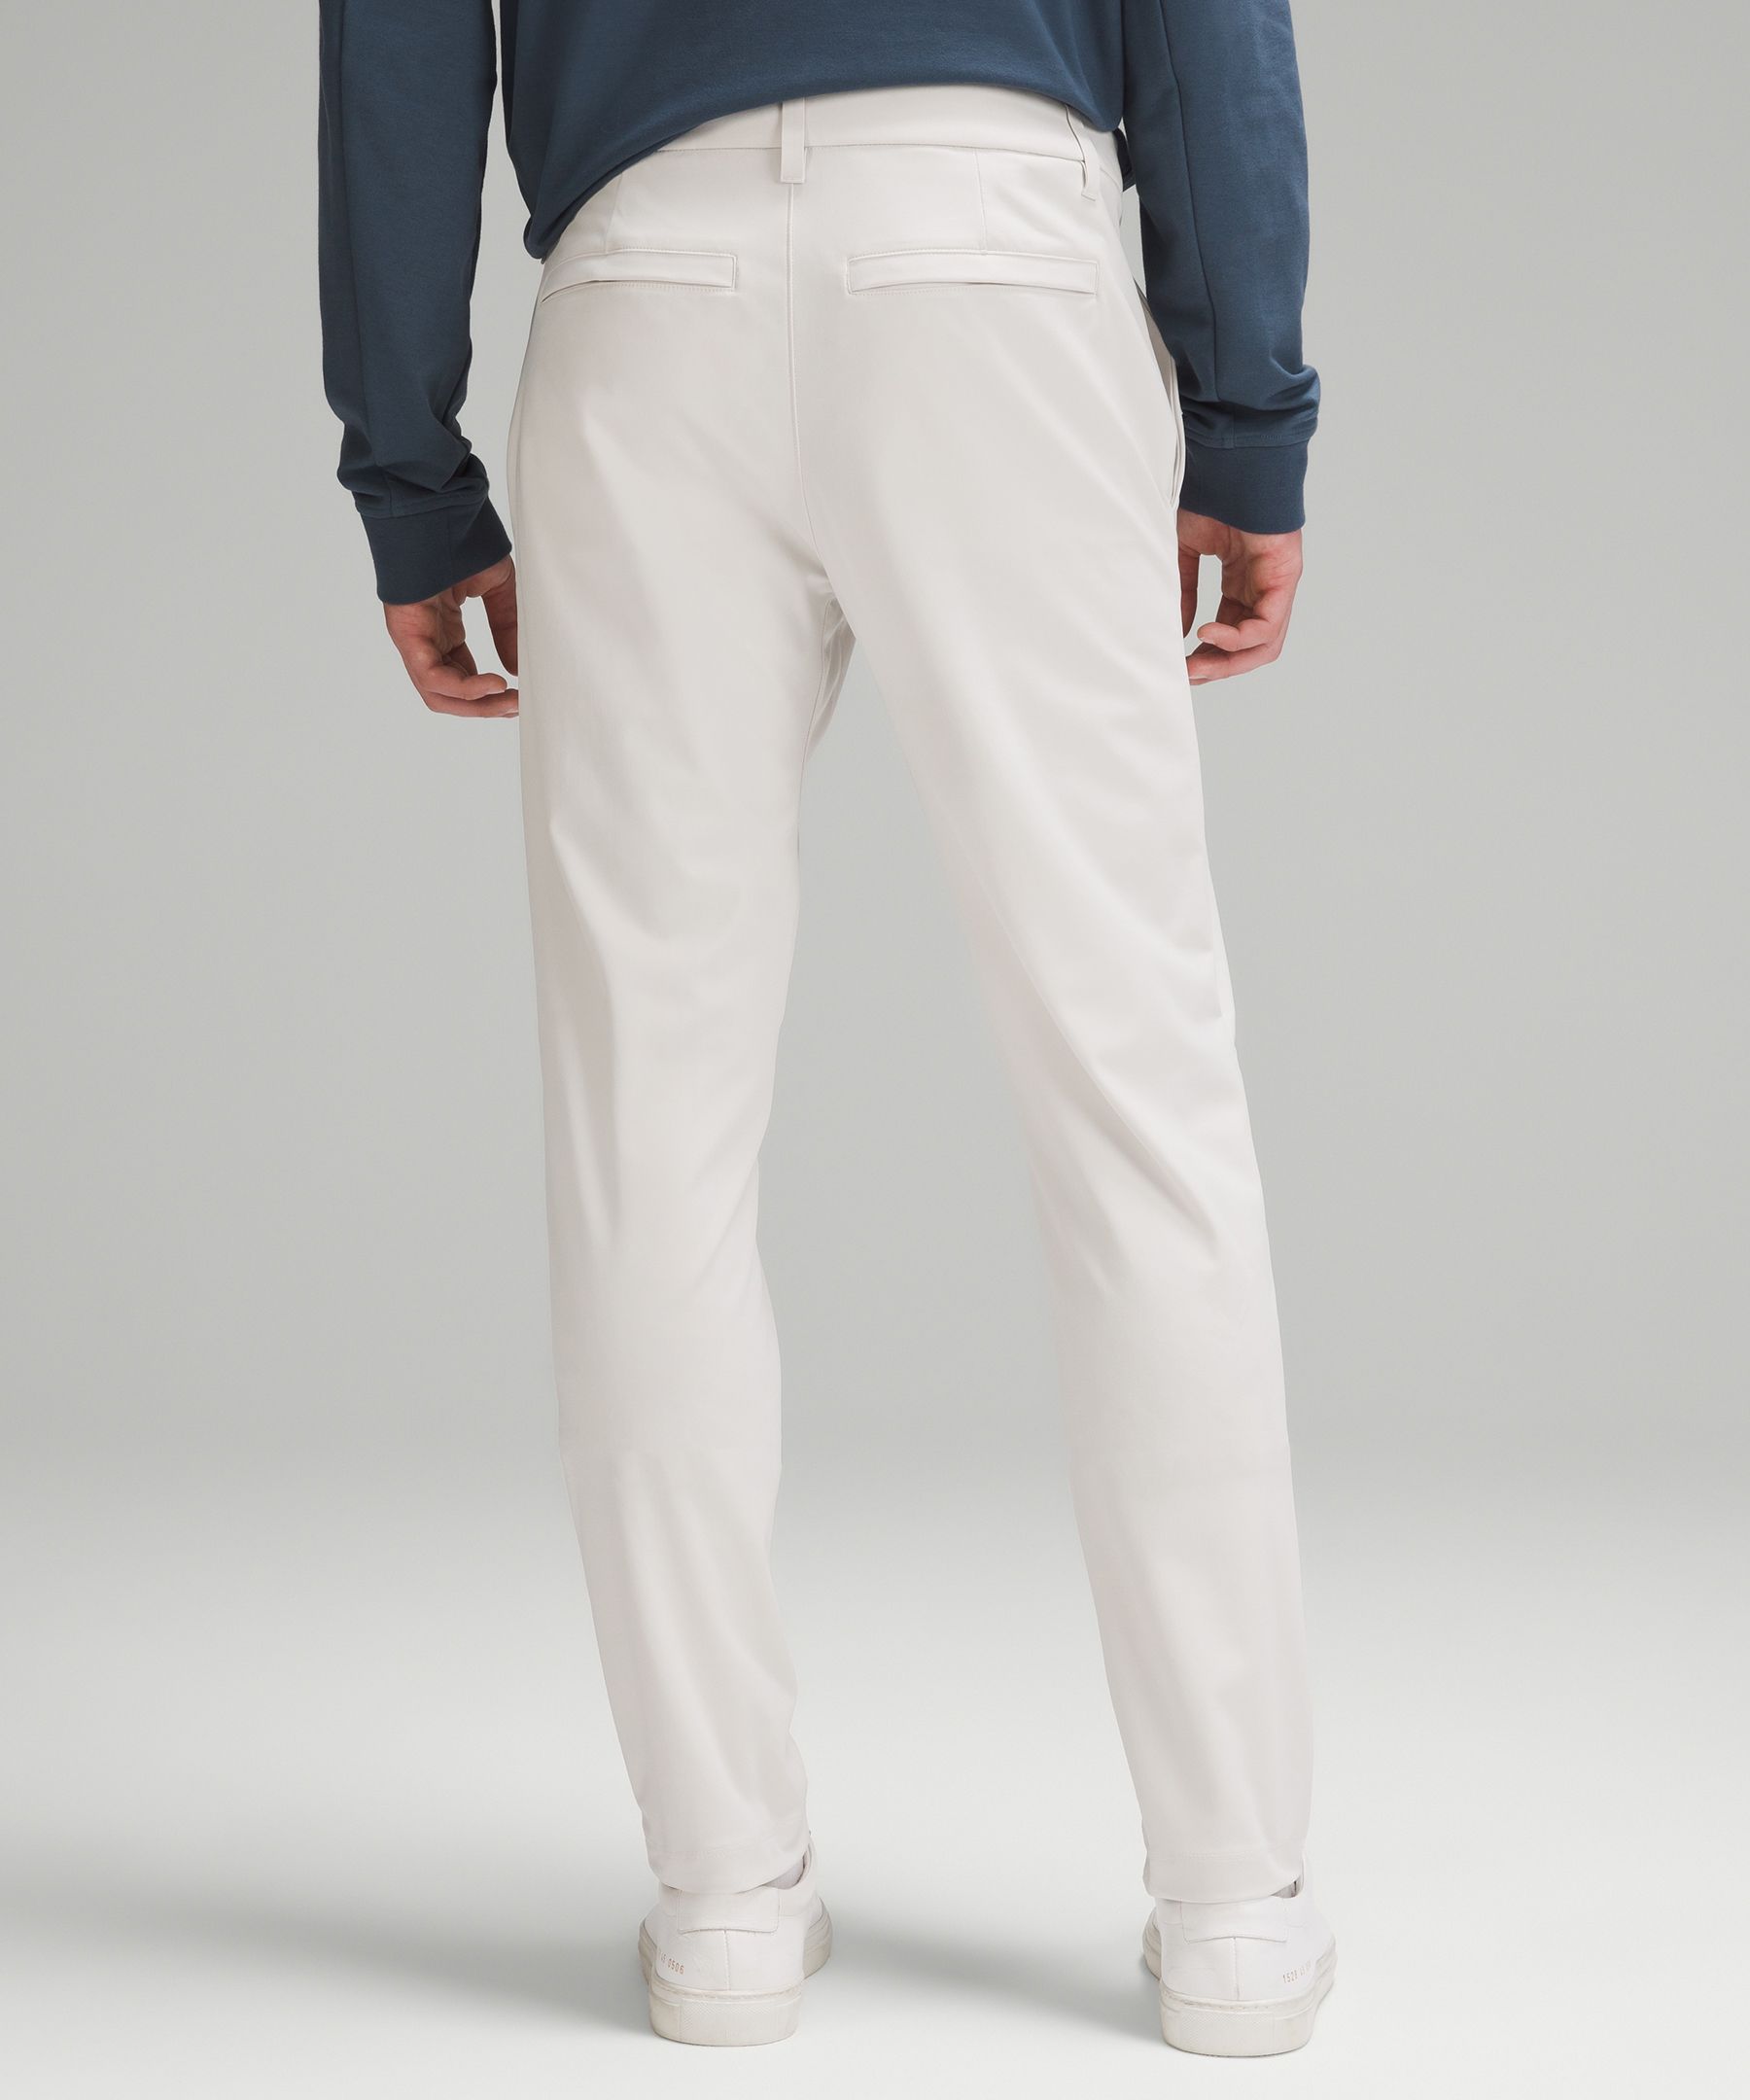 ABC Slim-Fit Trouser 30 *Warpstreme, Men's Trousers